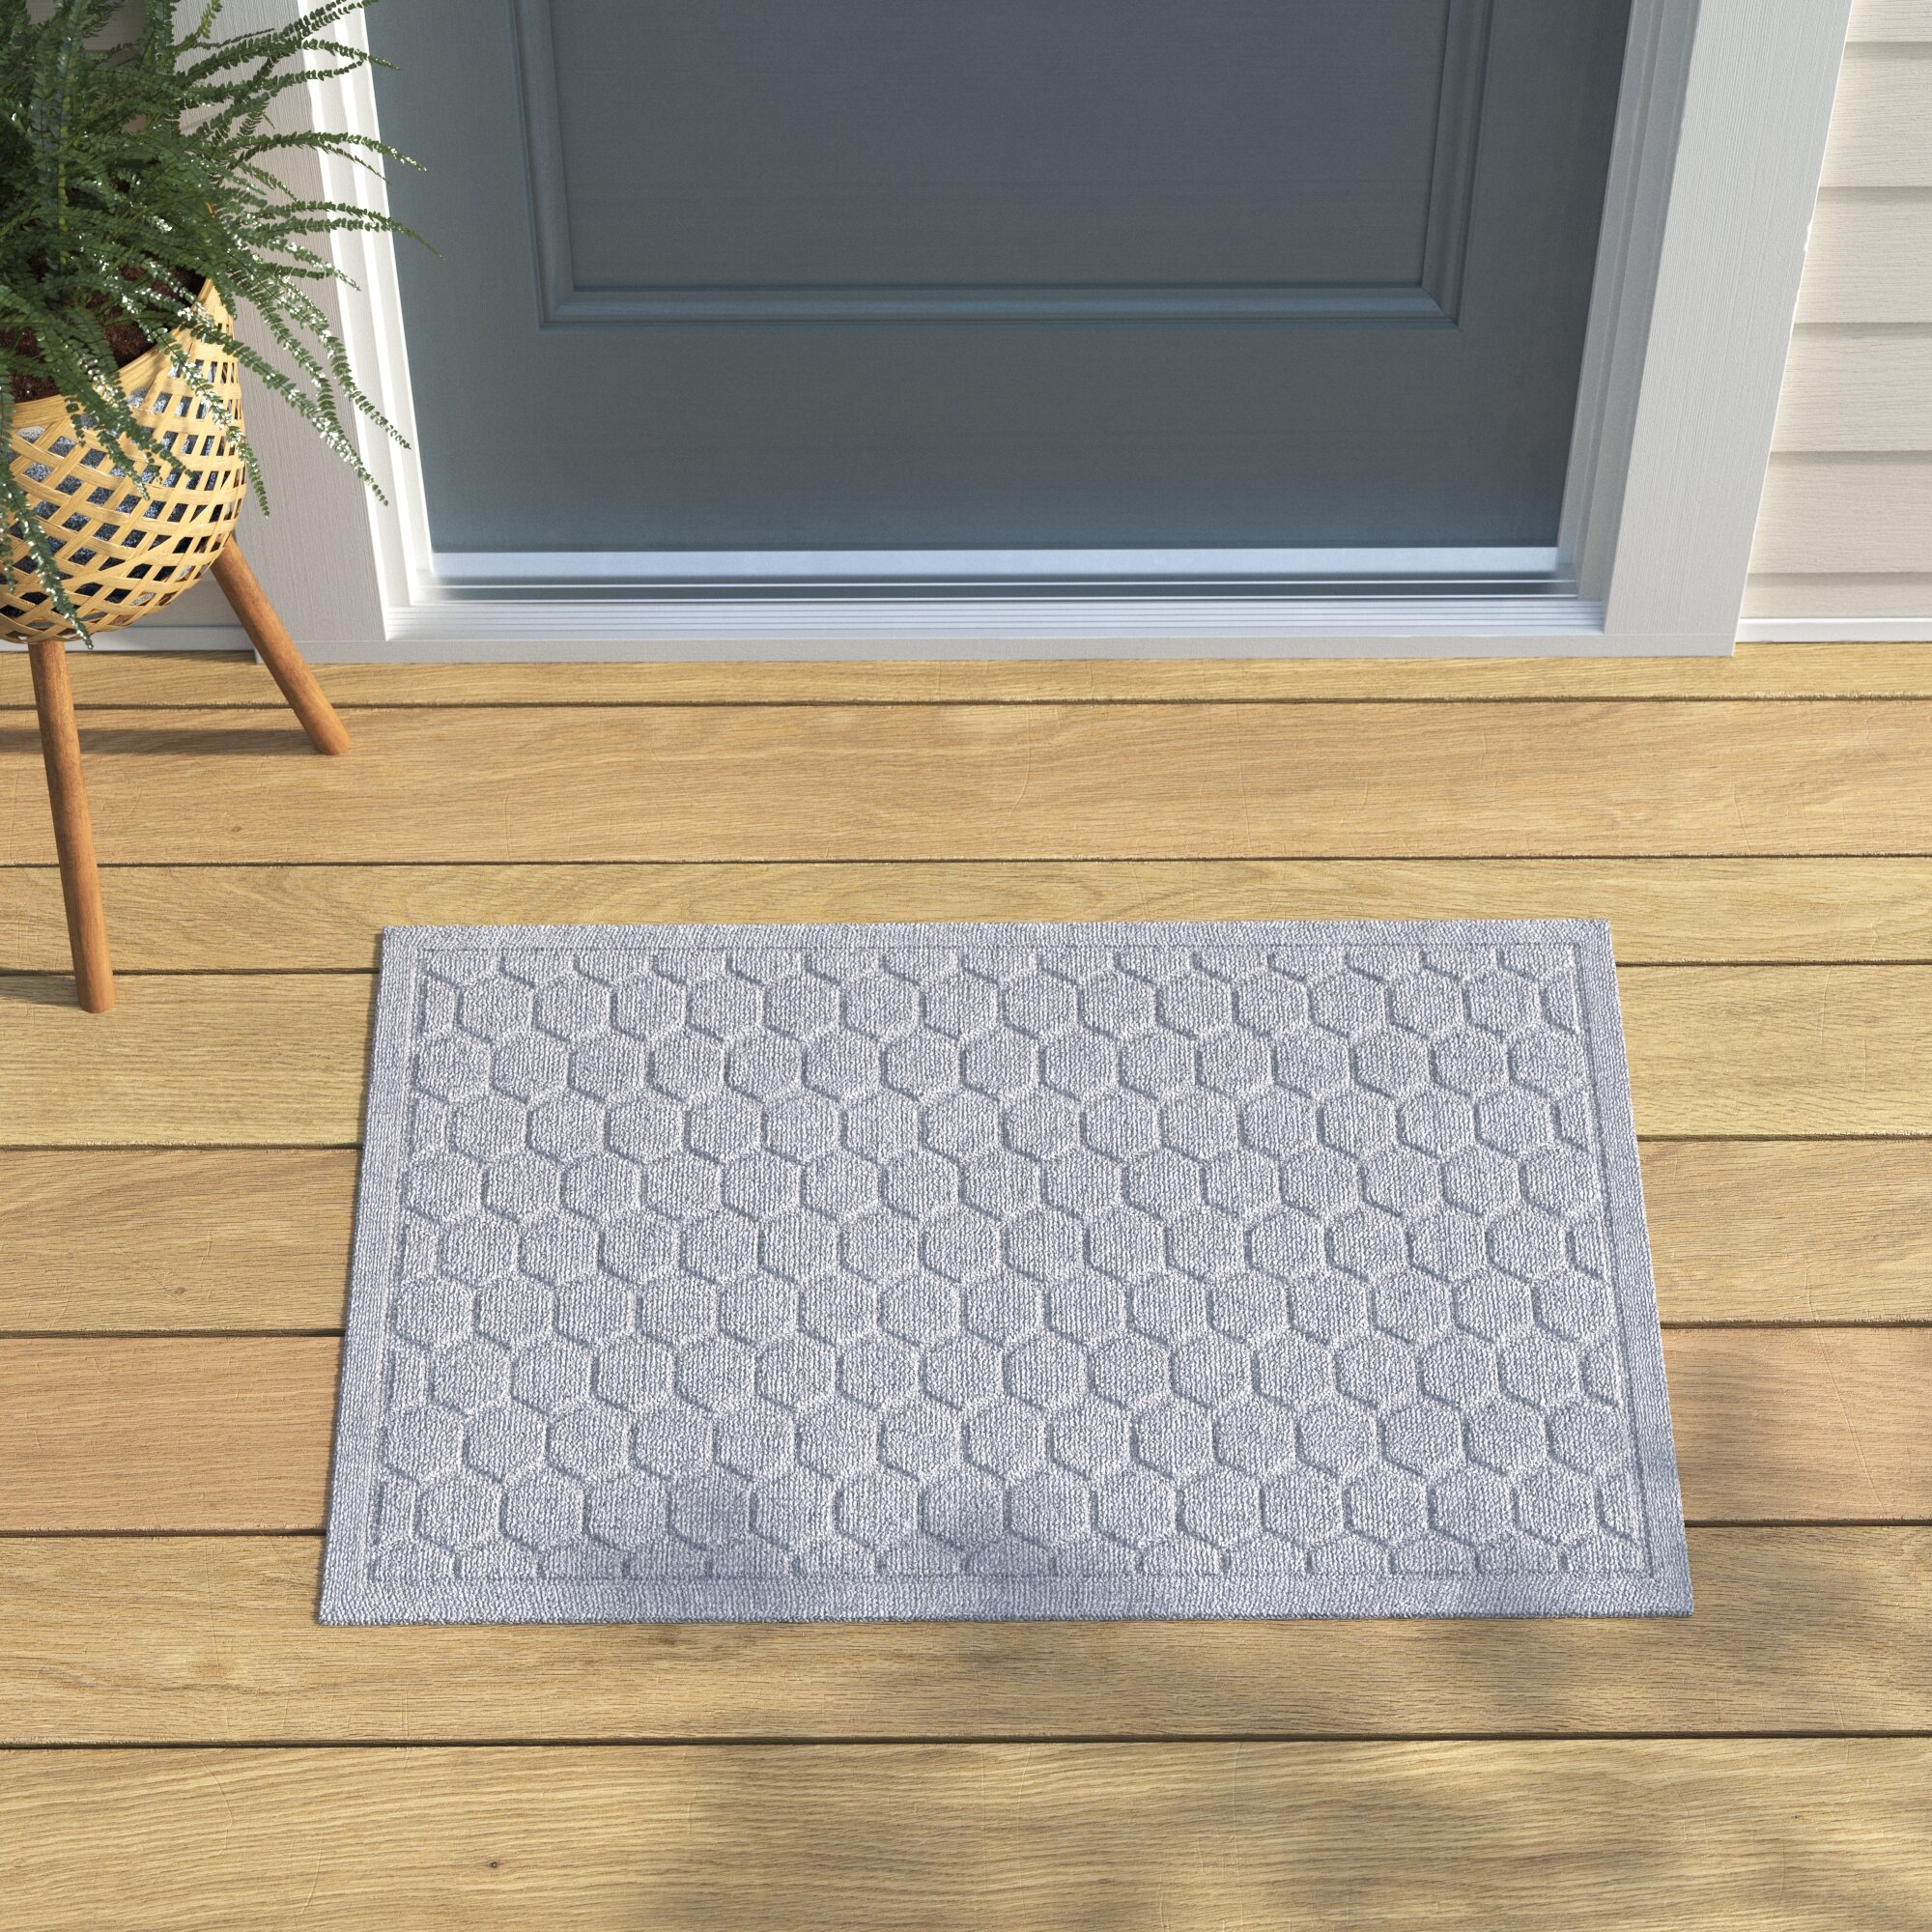 https://assets.wfcdn.com/im/17136124/compr-r85/1607/160743560/waterhog-honerycomb-indoor-outdoor-door-mat.jpg